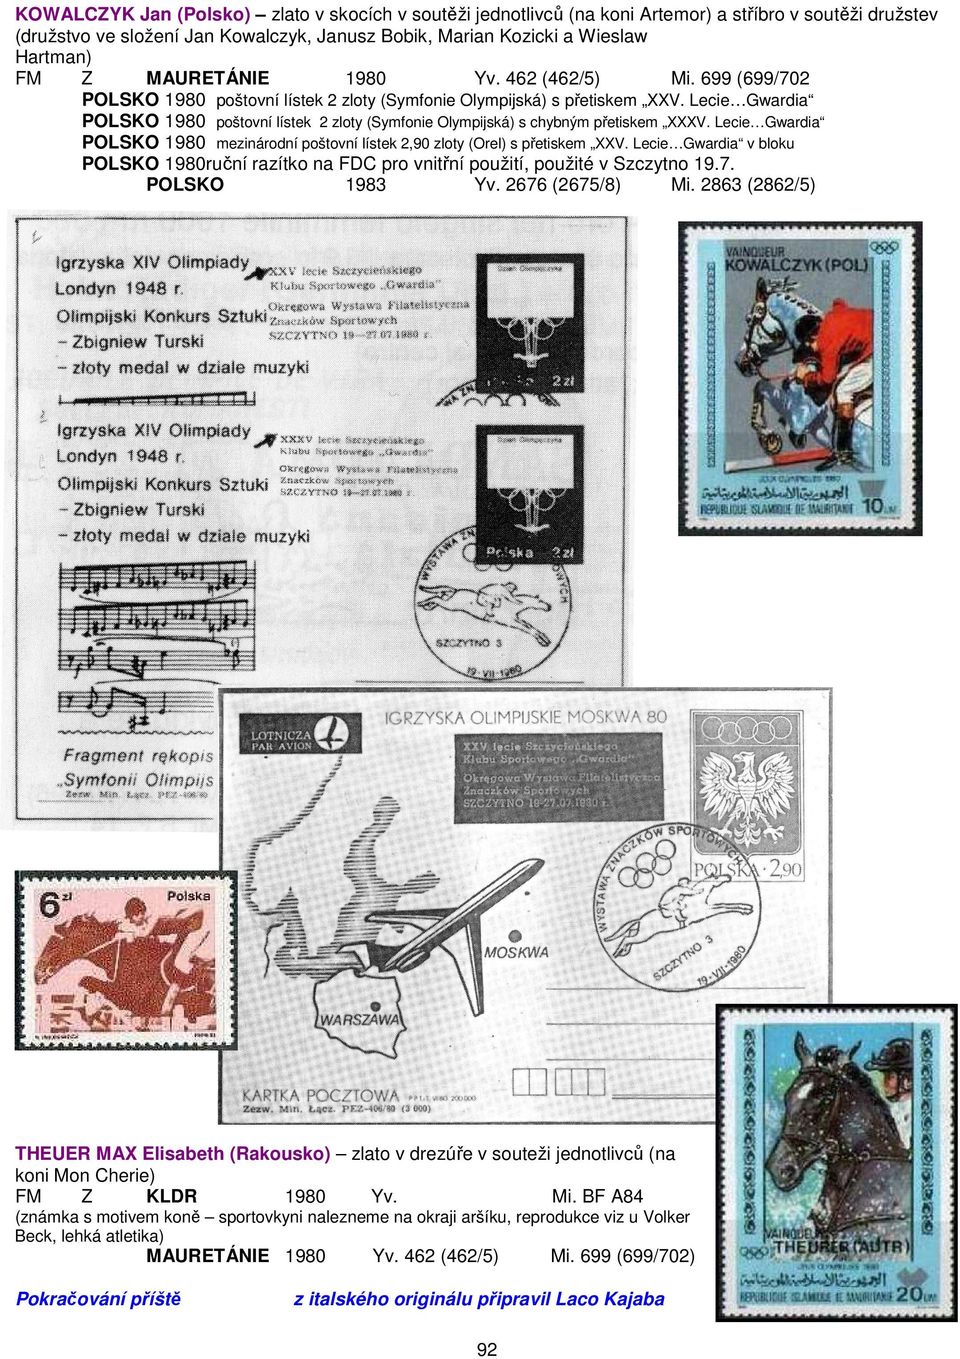 Lecie Gwardia POLSKO 1980 poštovní lístek 2 zloty (Symfonie Olympijská) s chybným přetiskem XXXV. Lecie Gwardia POLSKO 1980 mezinárodní poštovní lístek 2,90 zloty (Orel) s přetiskem XXV.